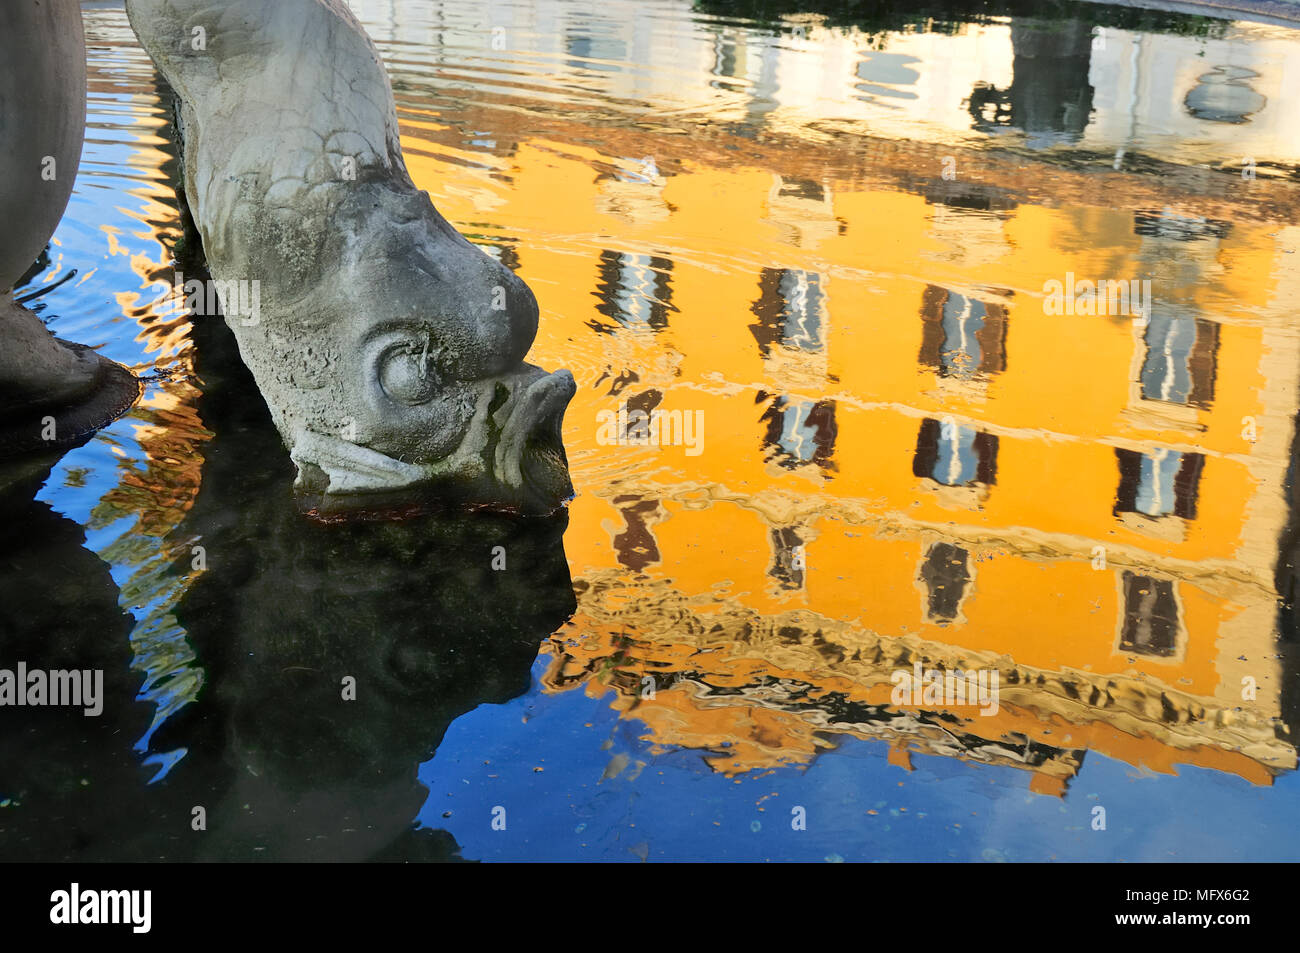 Fontaine au cloître de Michel-Ange, où l'on peut voir plus de 400 œuvres. Thermes de Dioclétien (Terme di Diocleziano). Rome, Italie Banque D'Images